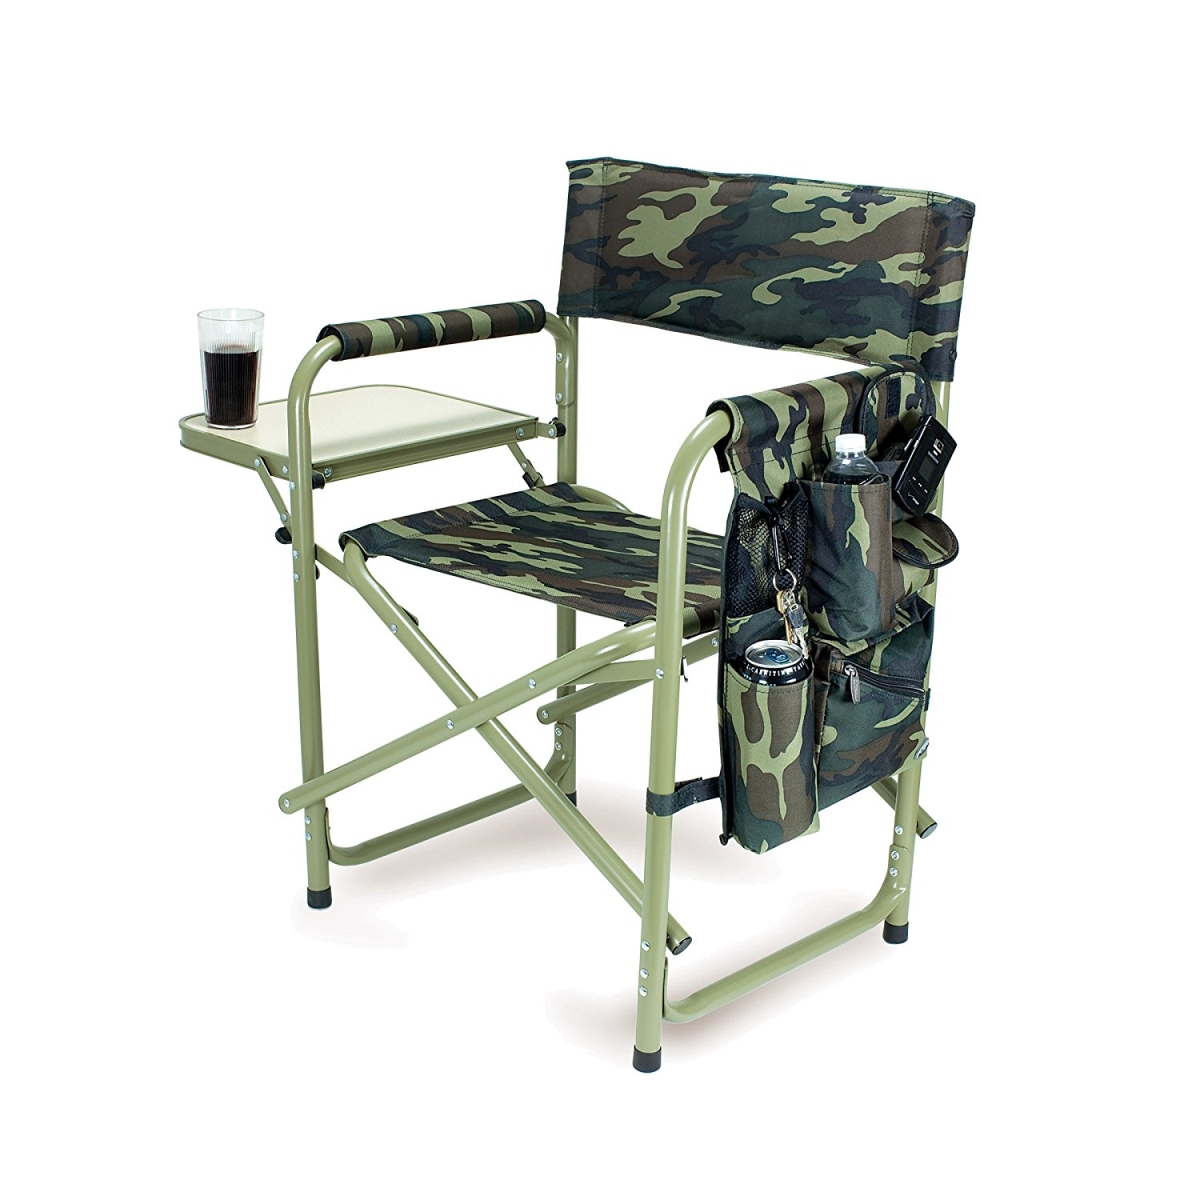 Oniva 810-17-164-000-0 Outdoor Directors Chair, Camouflage